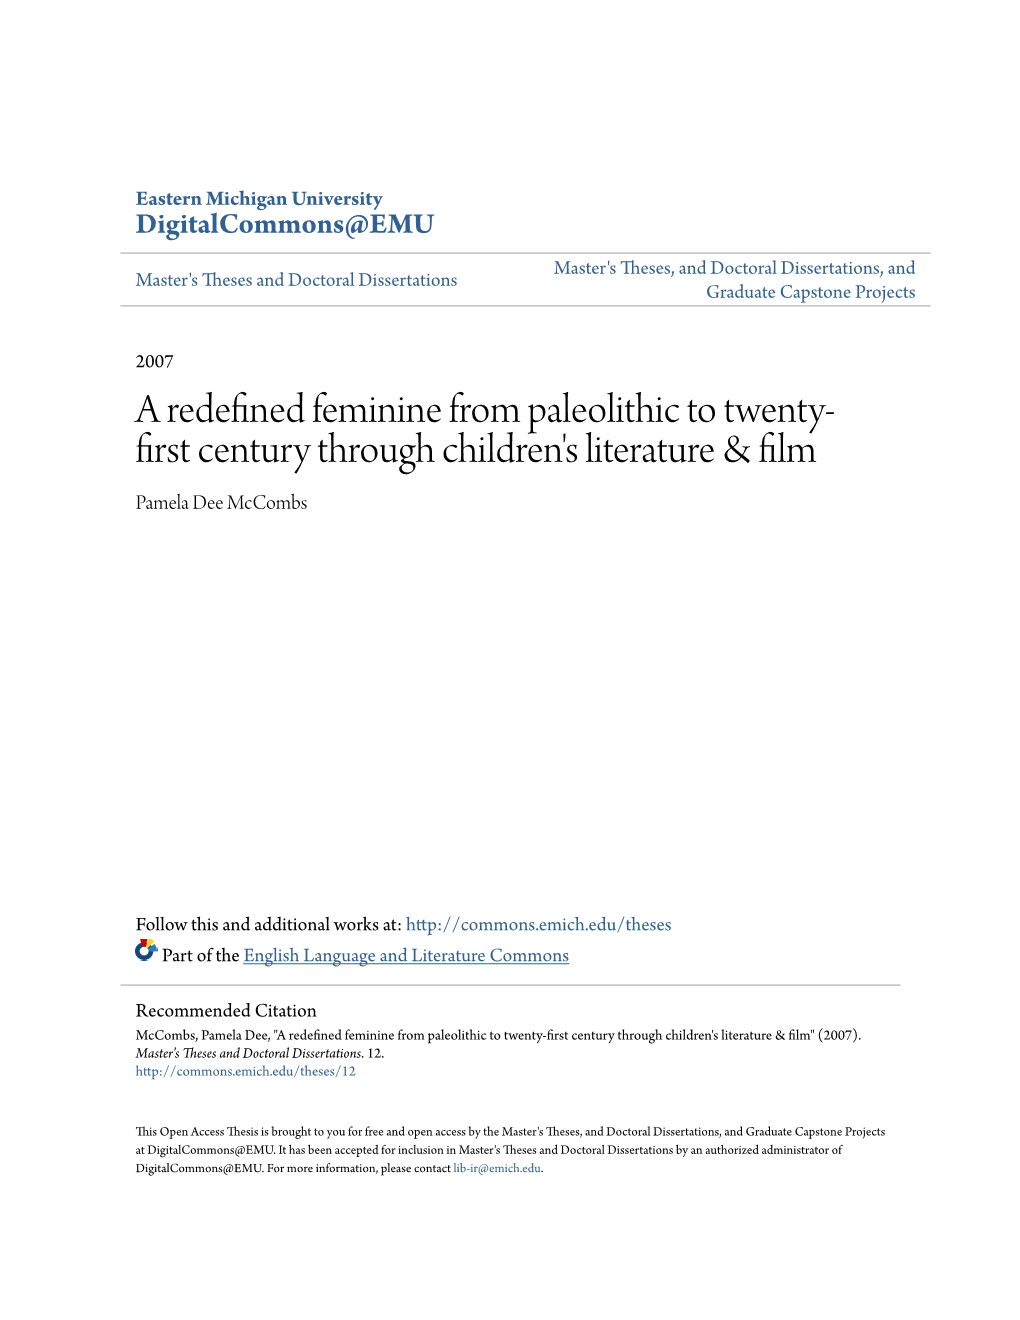 A Redefined Feminine from Paleolithic to Twenty-First Century Through Children's Literature & Film" (2007)